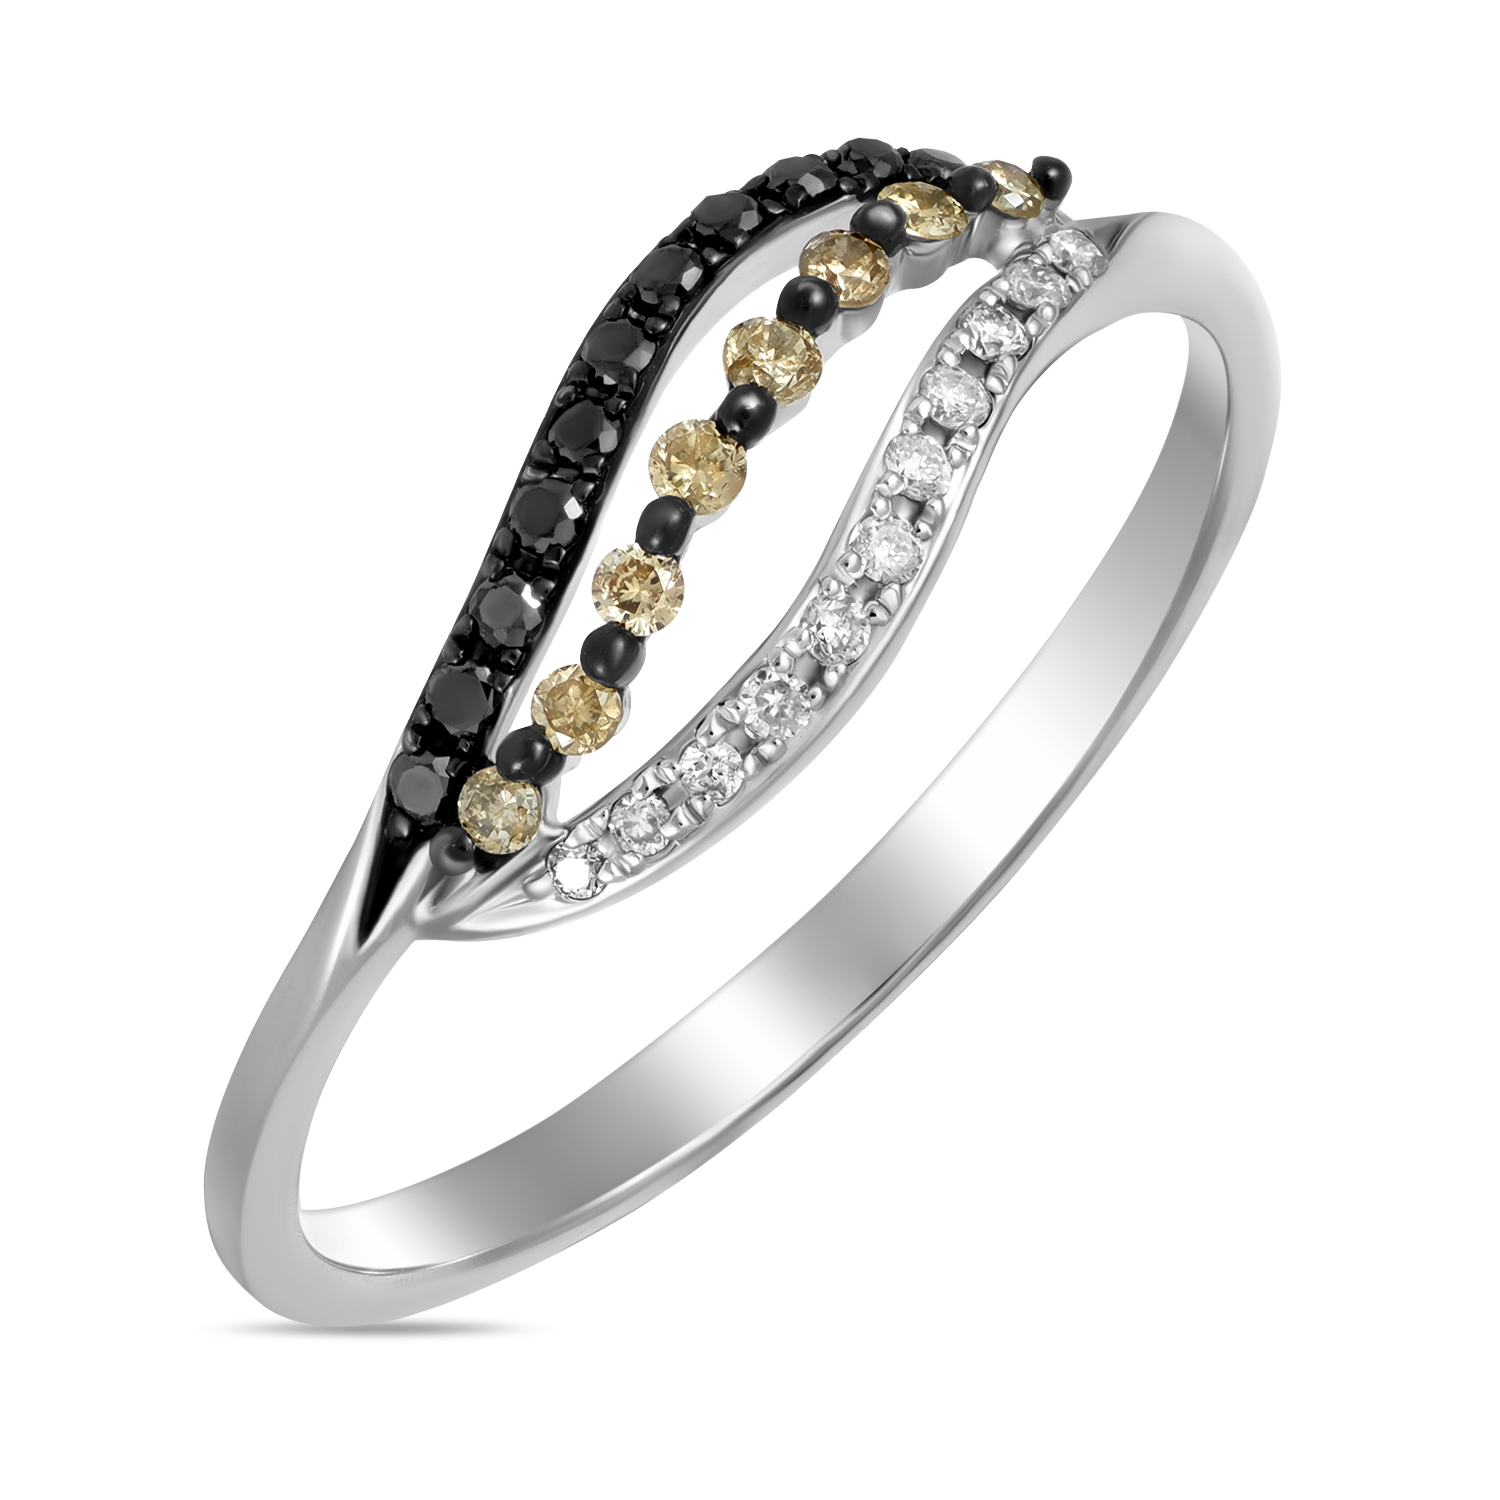 Кольца МЮЗ Золотое кольцо с бриллиантами и облагороженными бриллиантами кольца miuz diamonds r01 sol59 025 g3 w